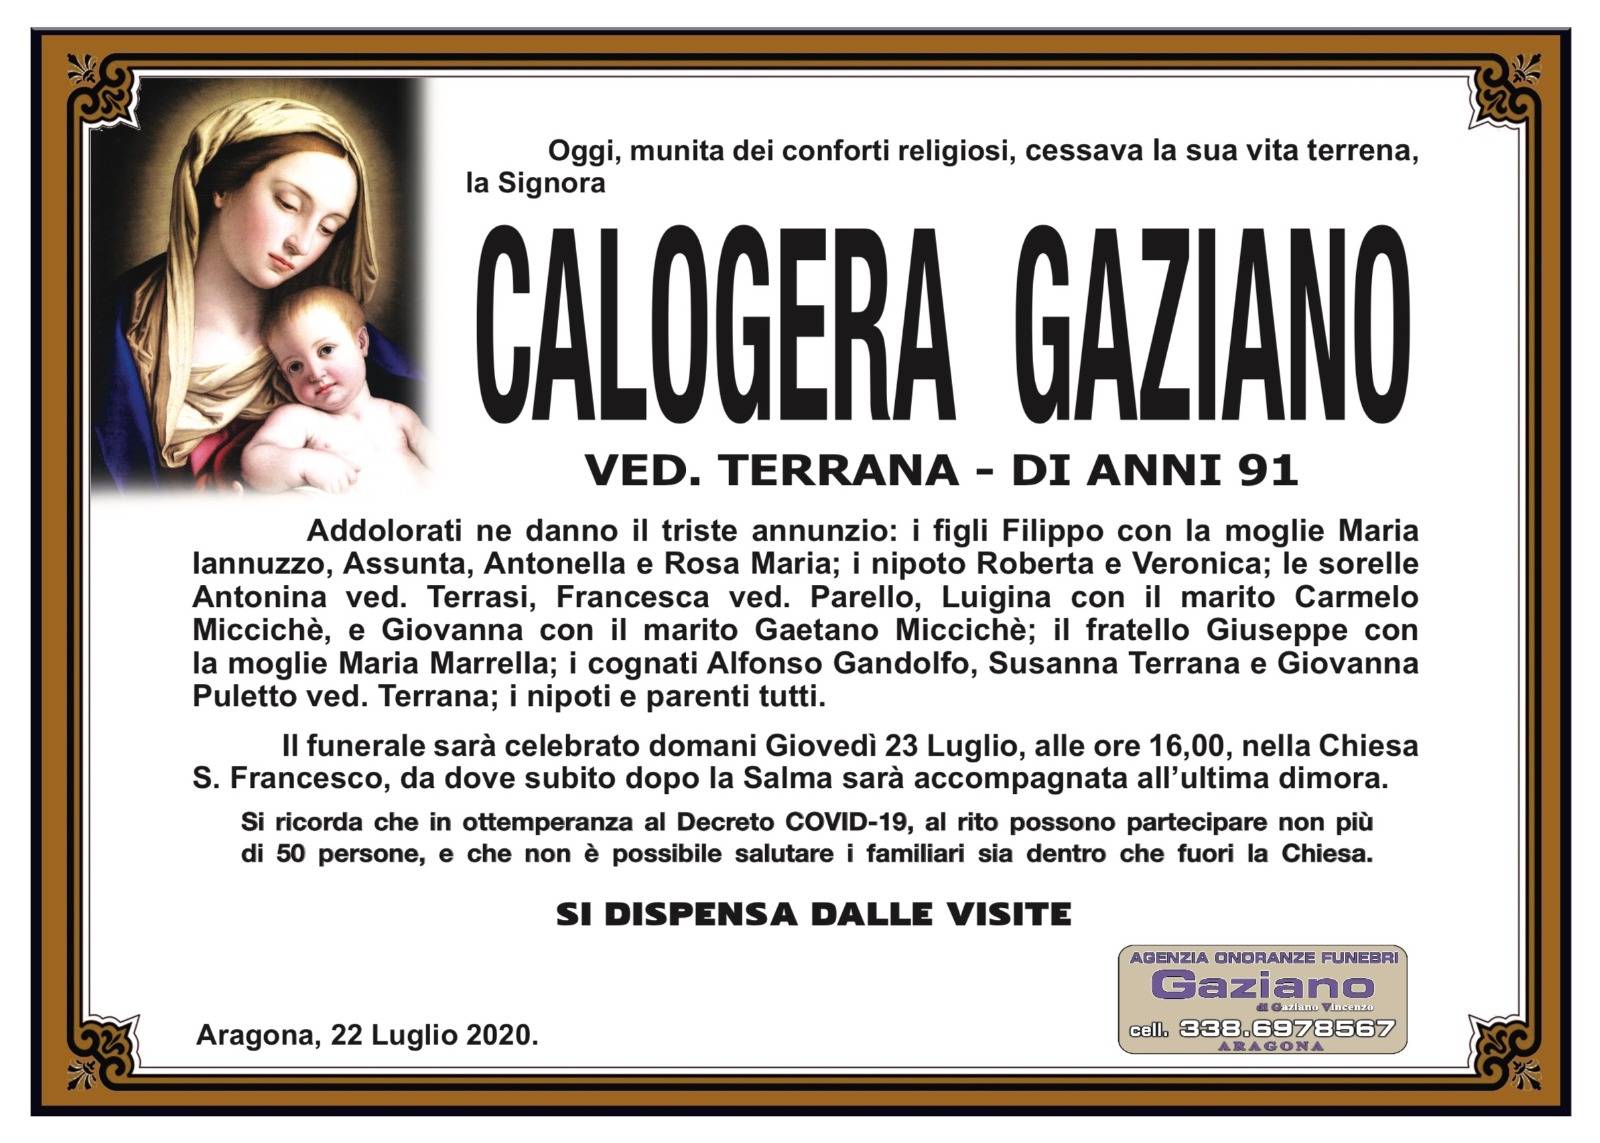 Calogera Gaziano